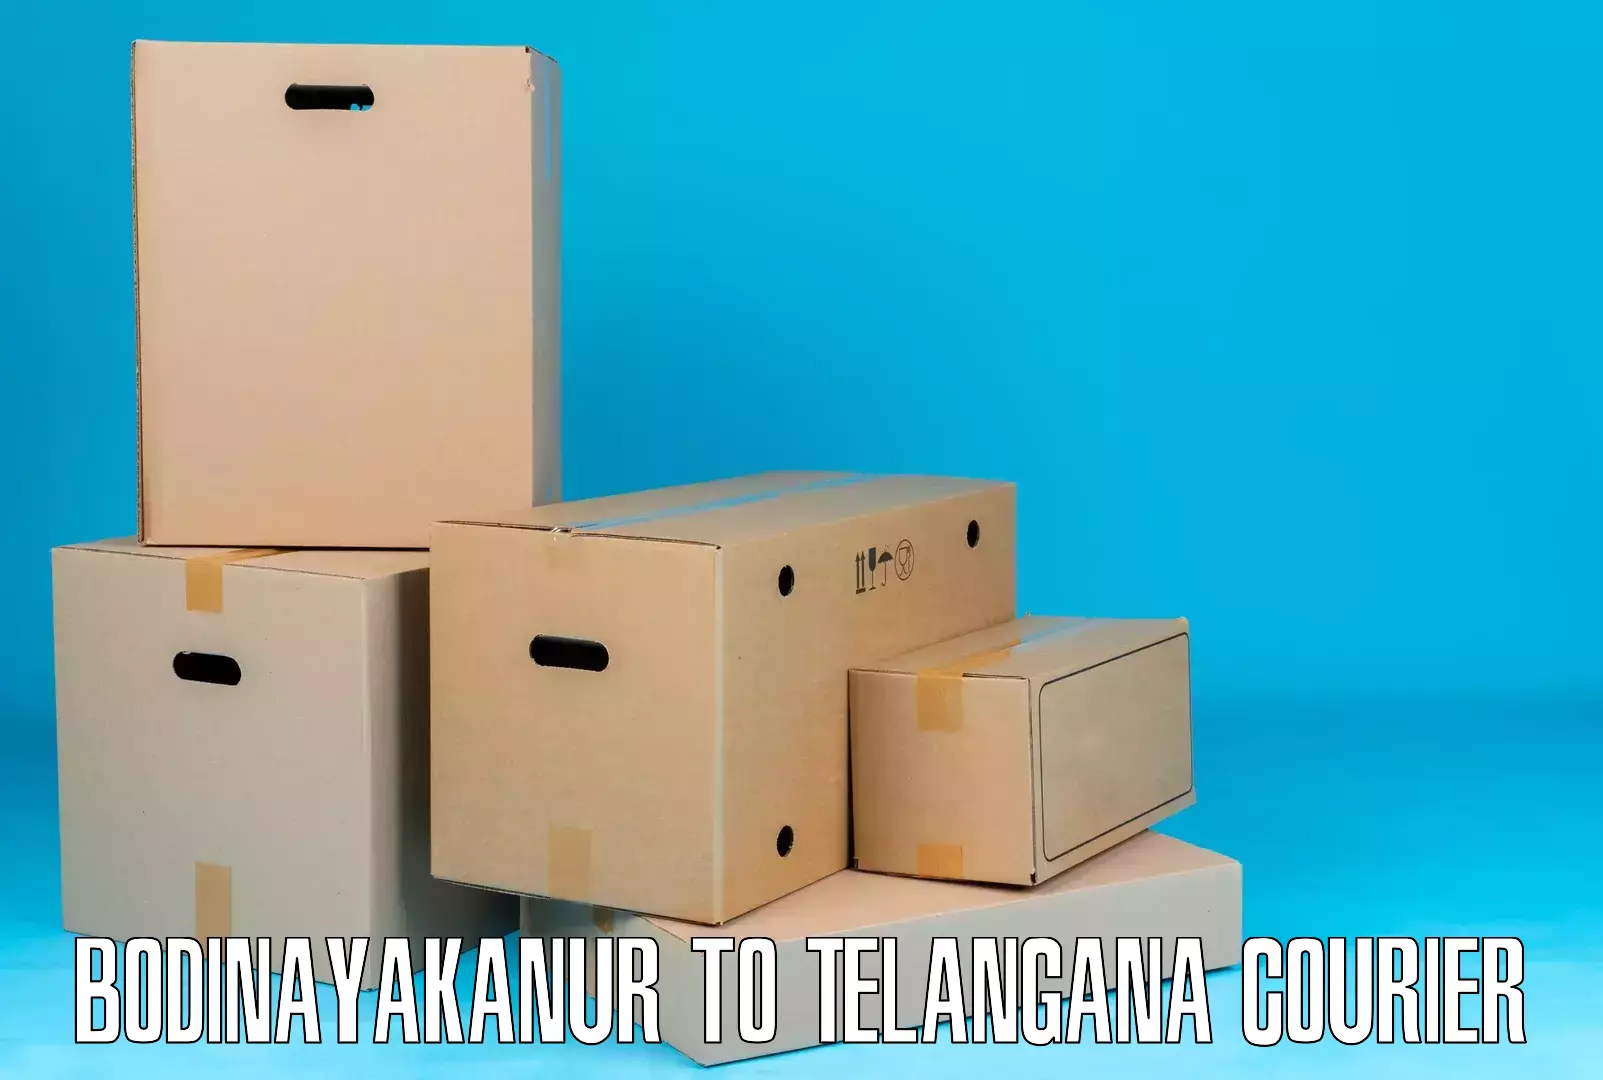 Custom courier rates in Bodinayakanur to Telangana